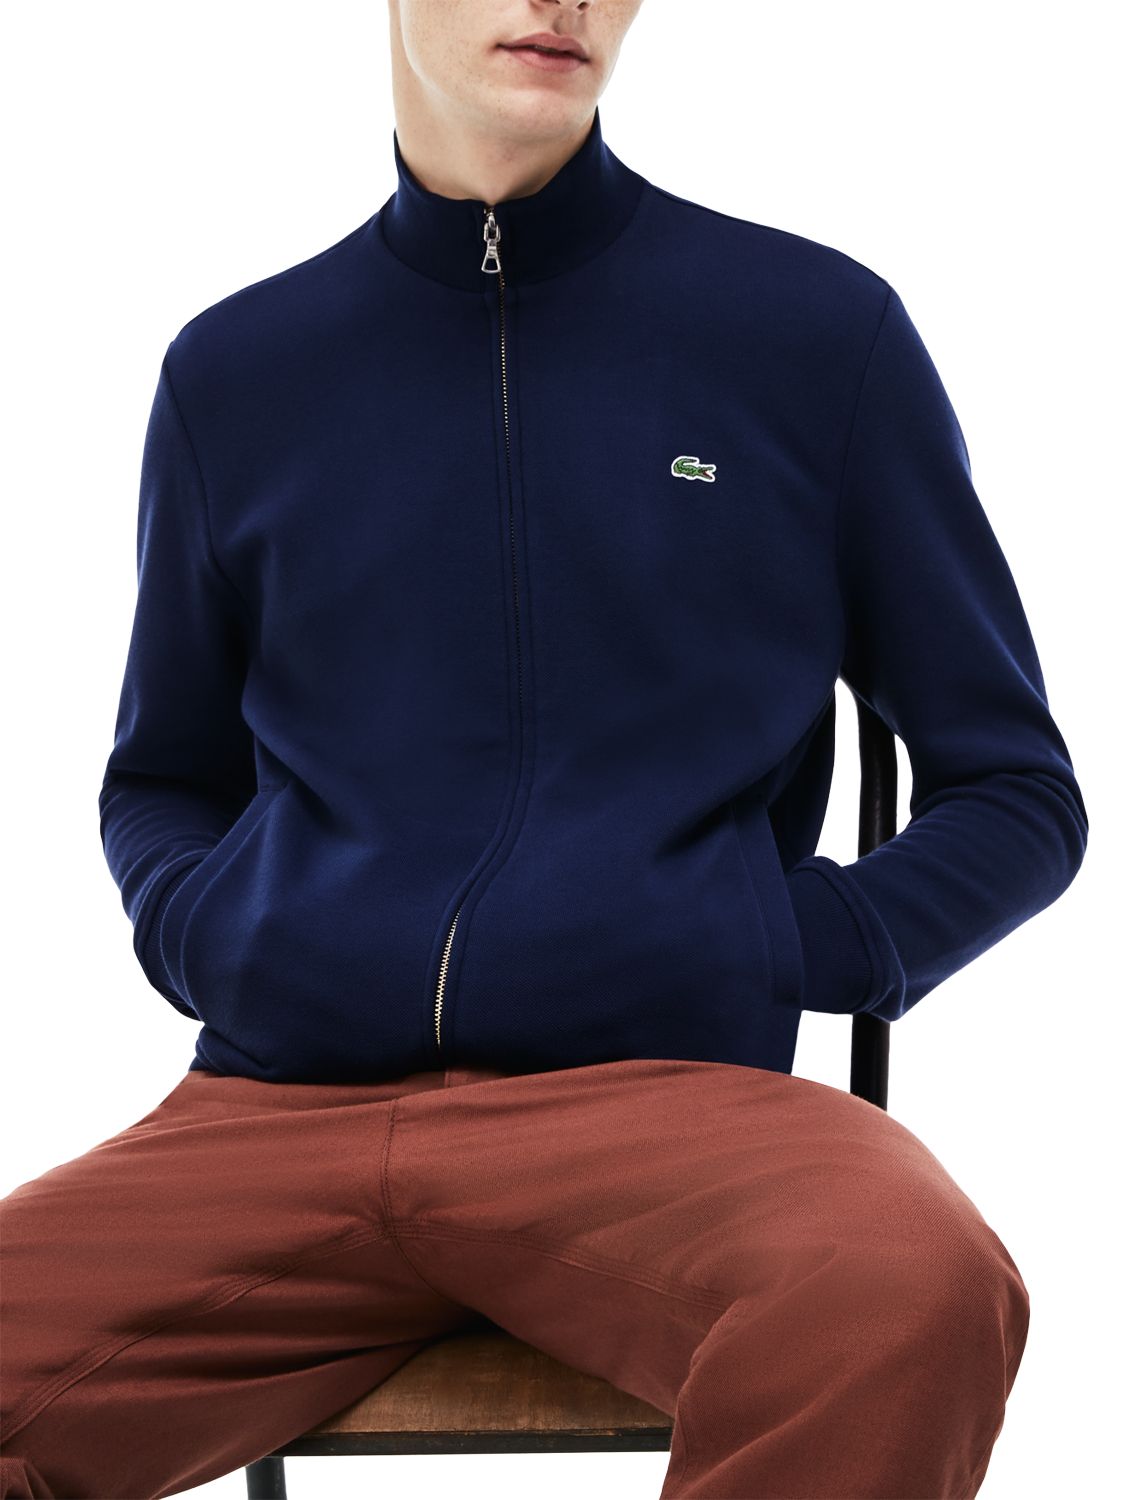 Lacoste Classic Zip Through Sweatshirt, Navy, S